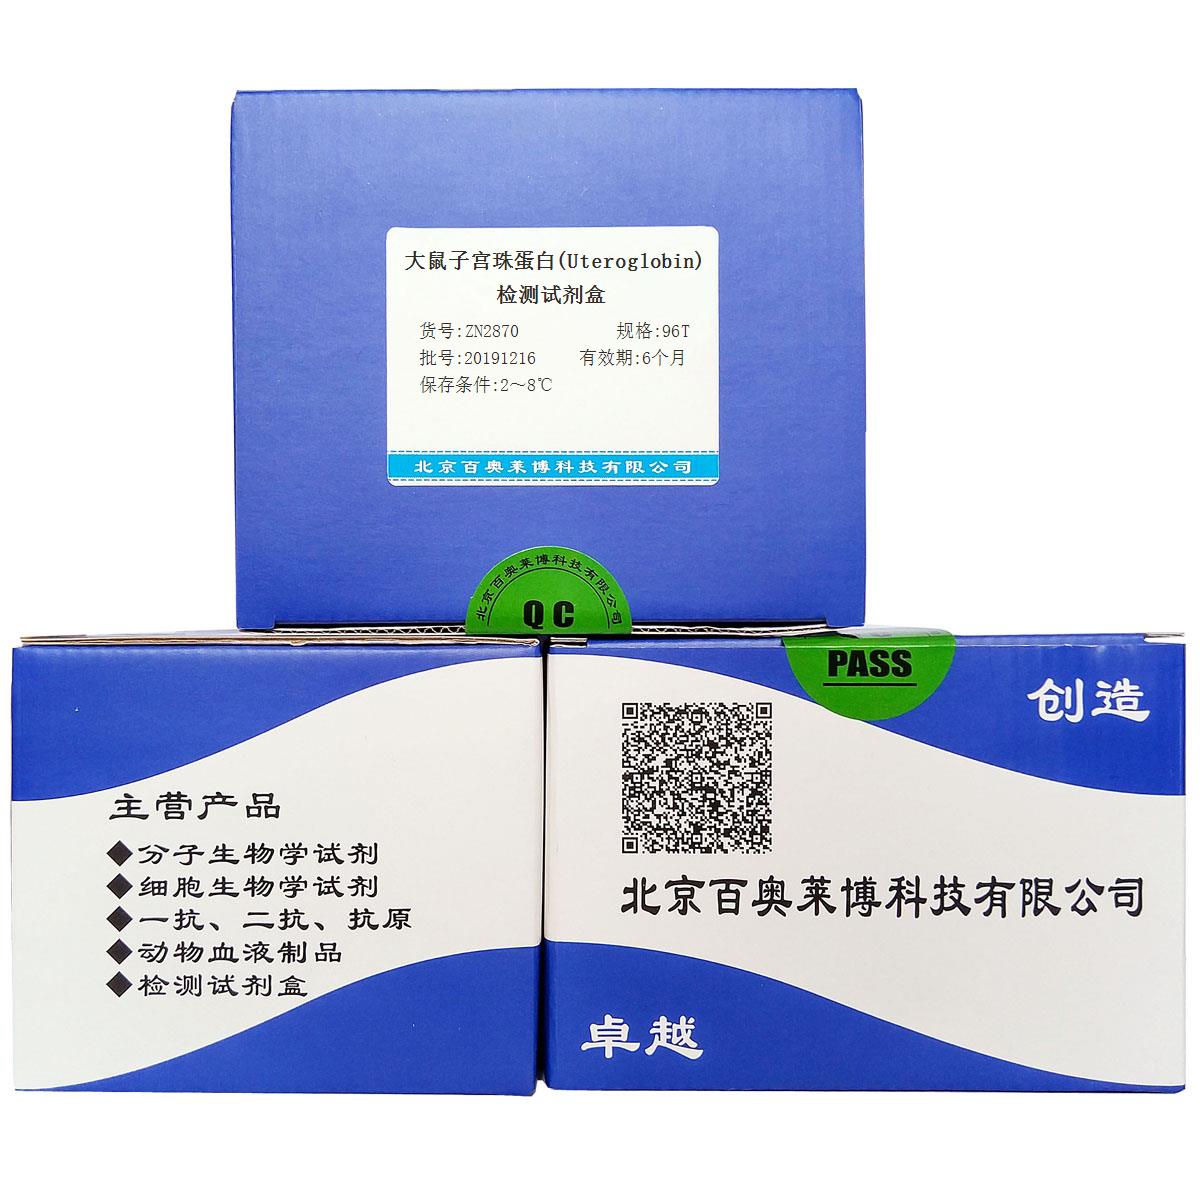 大鼠子宫珠蛋白(Uteroglobin)检测试剂盒